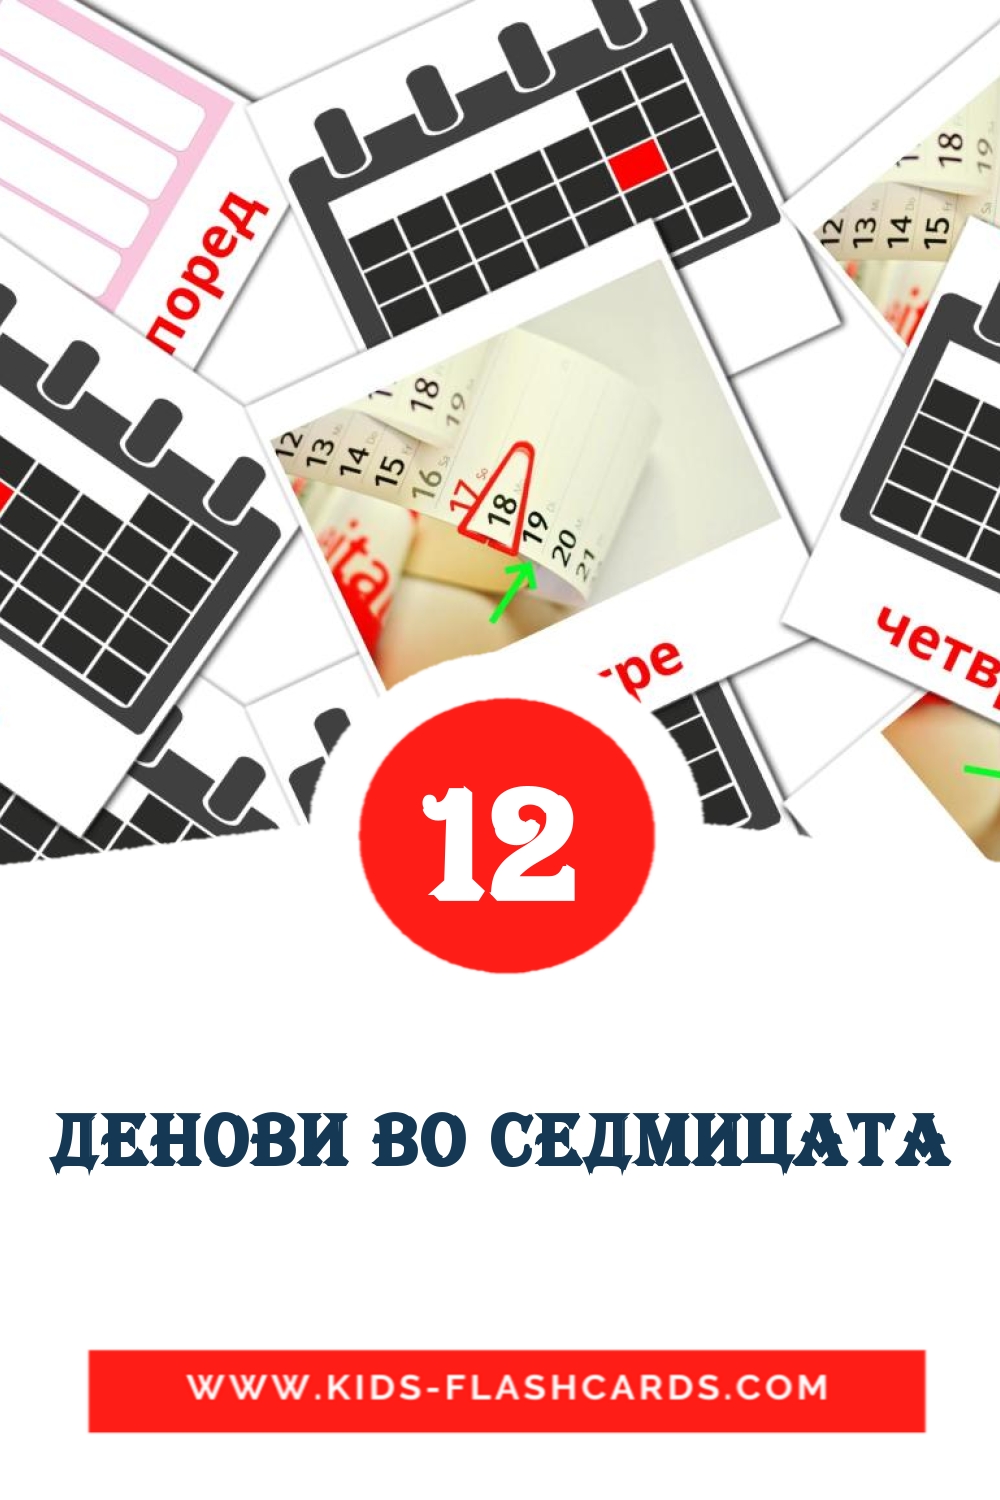 12 tarjetas didacticas de Денови во седмицата para el jardín de infancia en macedonio